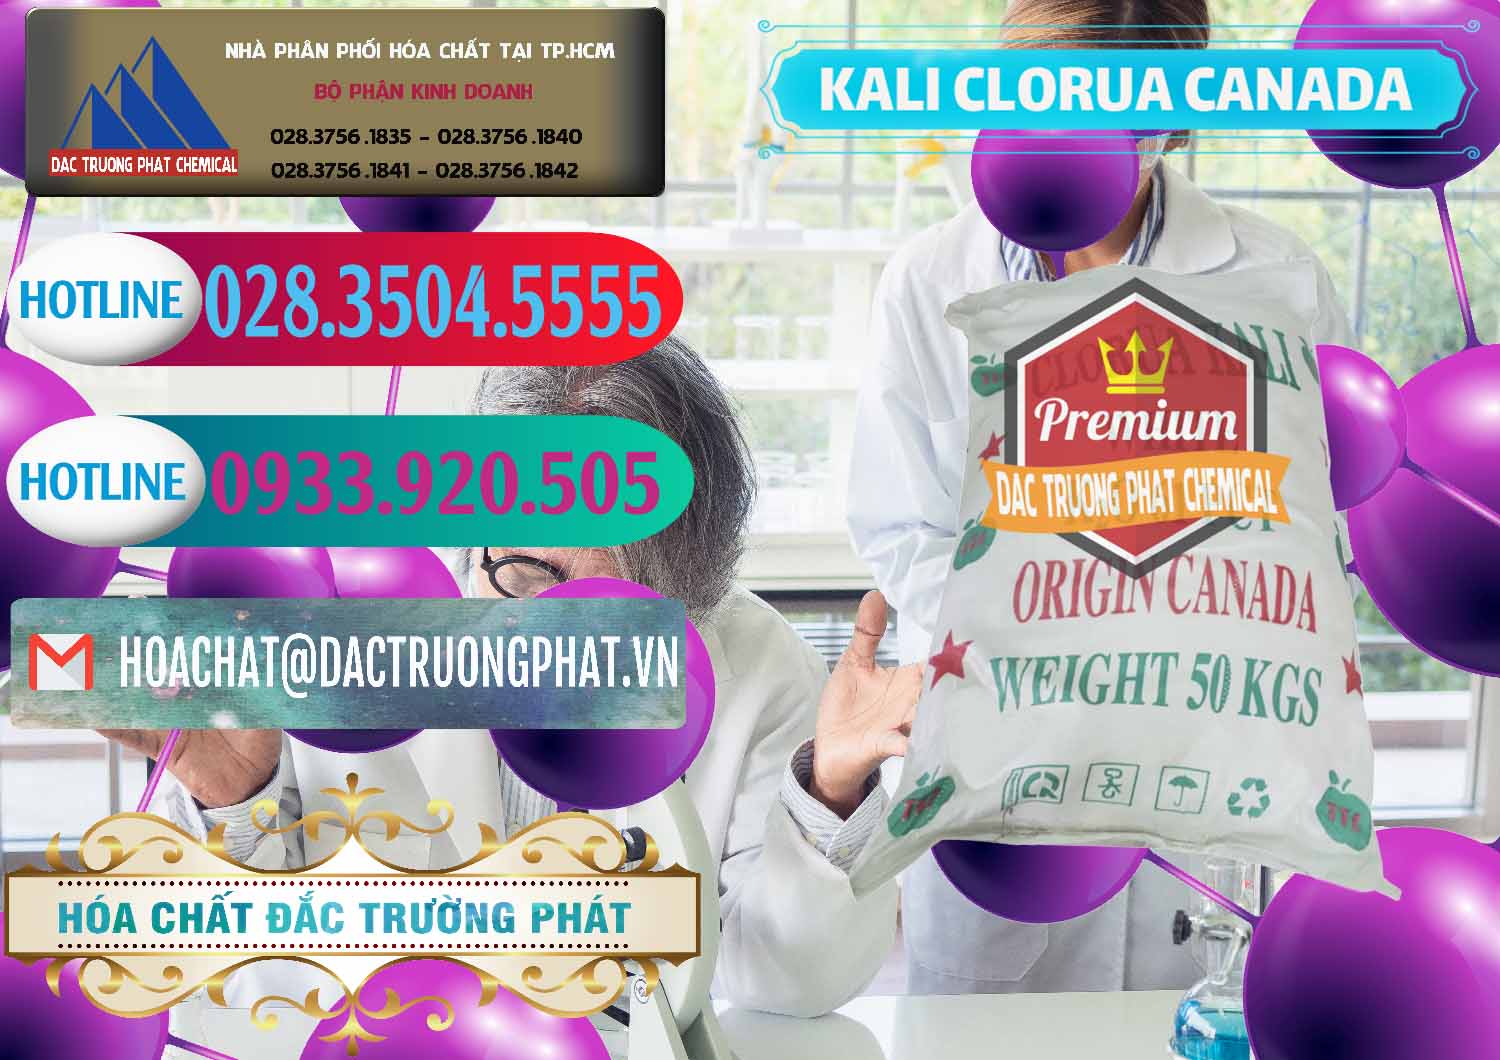 Bán _ cung cấp KCL – Kali Clorua Trắng Canada - 0437 - Đơn vị chuyên bán ( cung cấp ) hóa chất tại TP.HCM - truongphat.vn